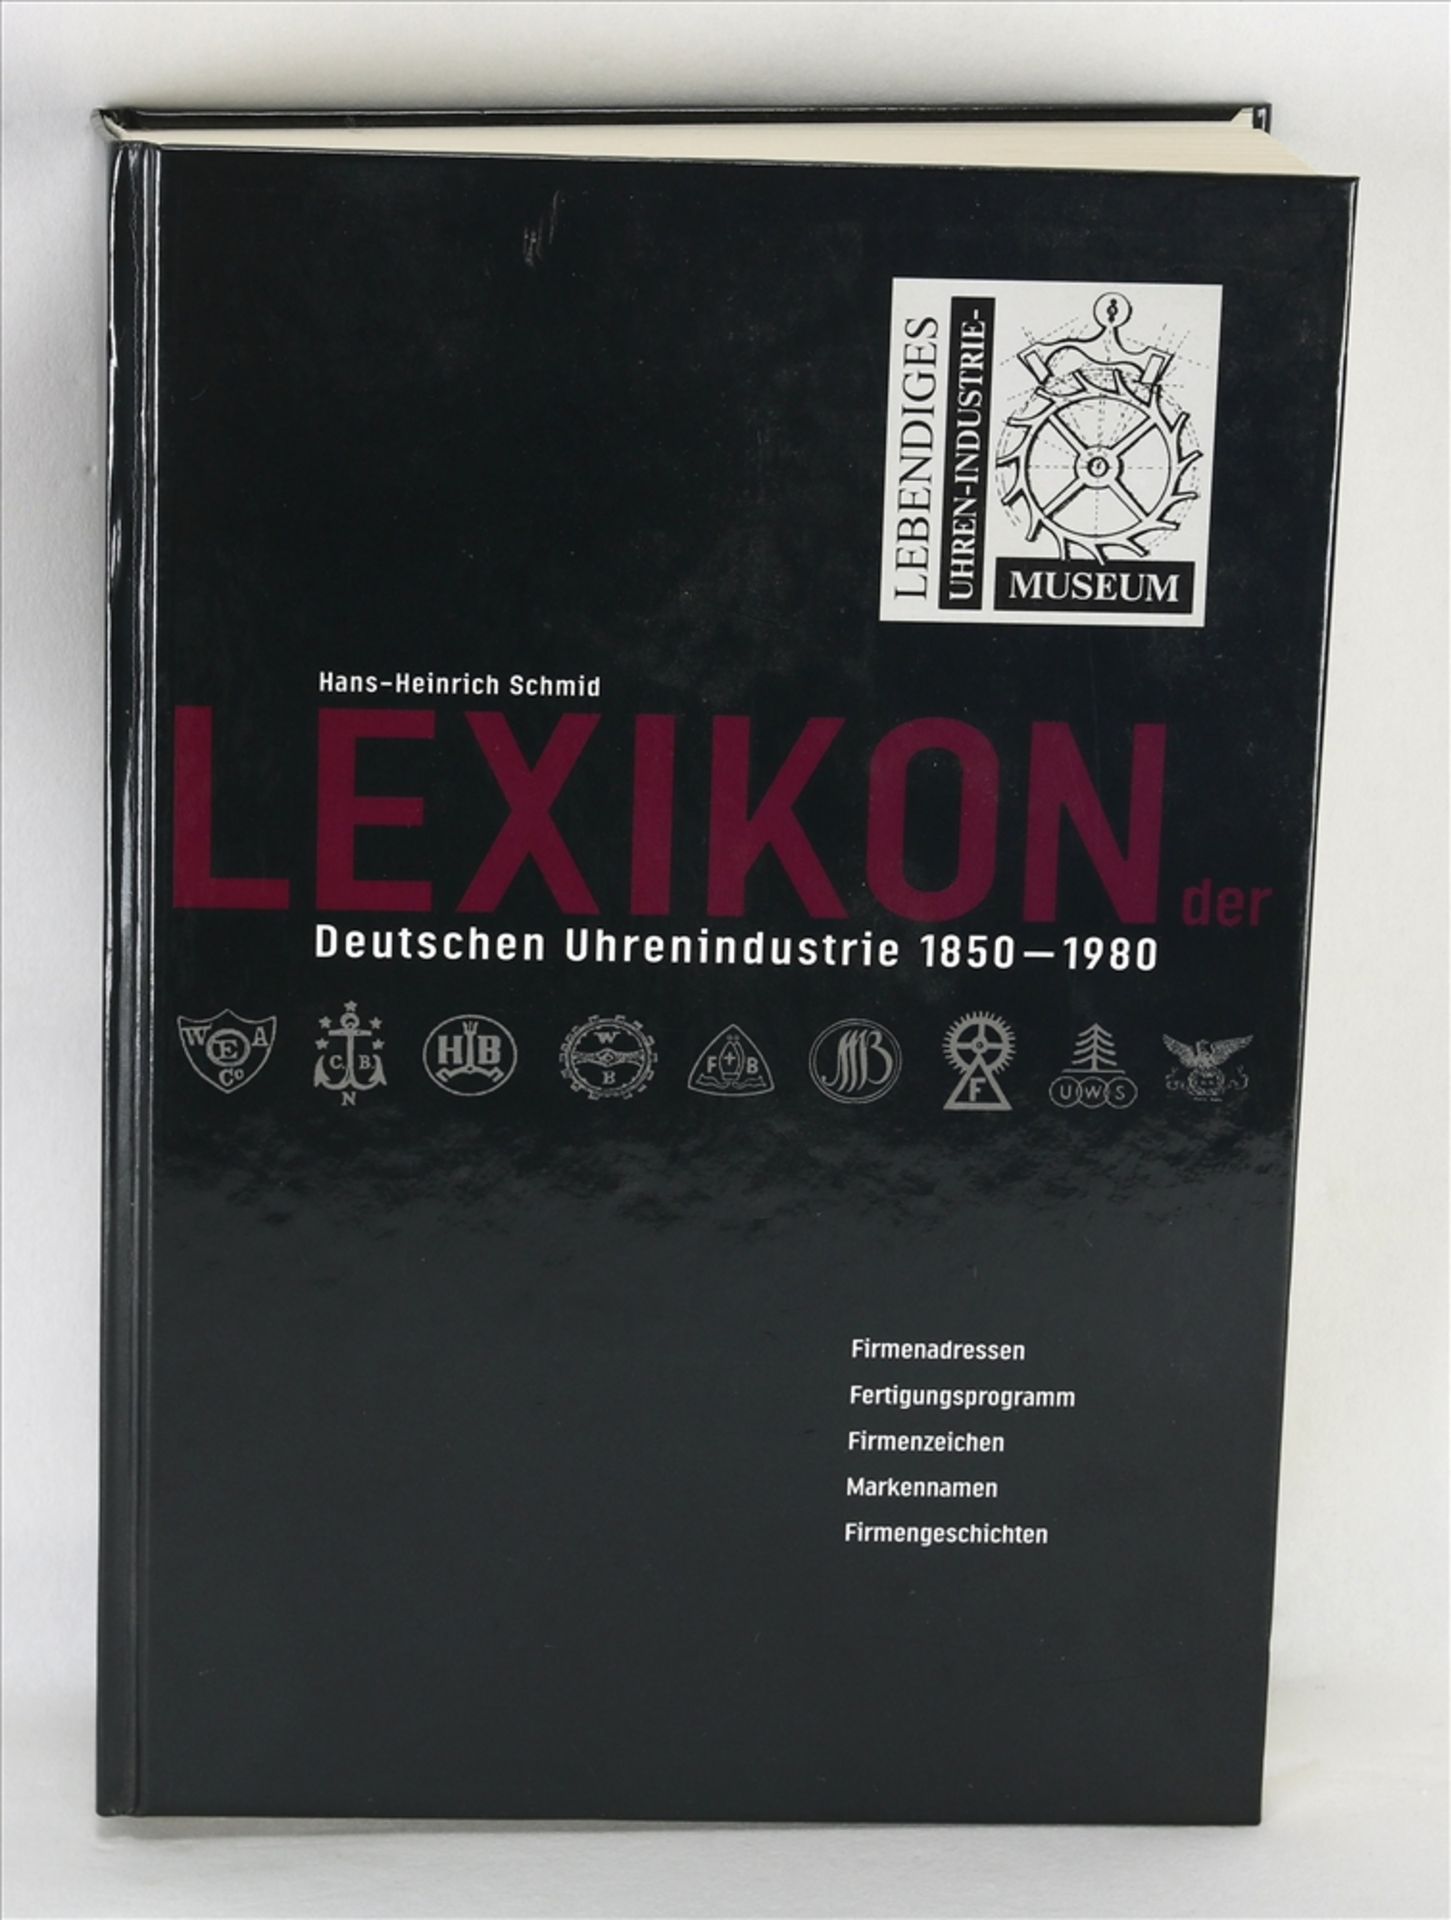 Lexikon der Deutschen Uhrenindustrie 1850-1980 Autor: Hans-Heinrich Schmid. Förderkreis lebendiges